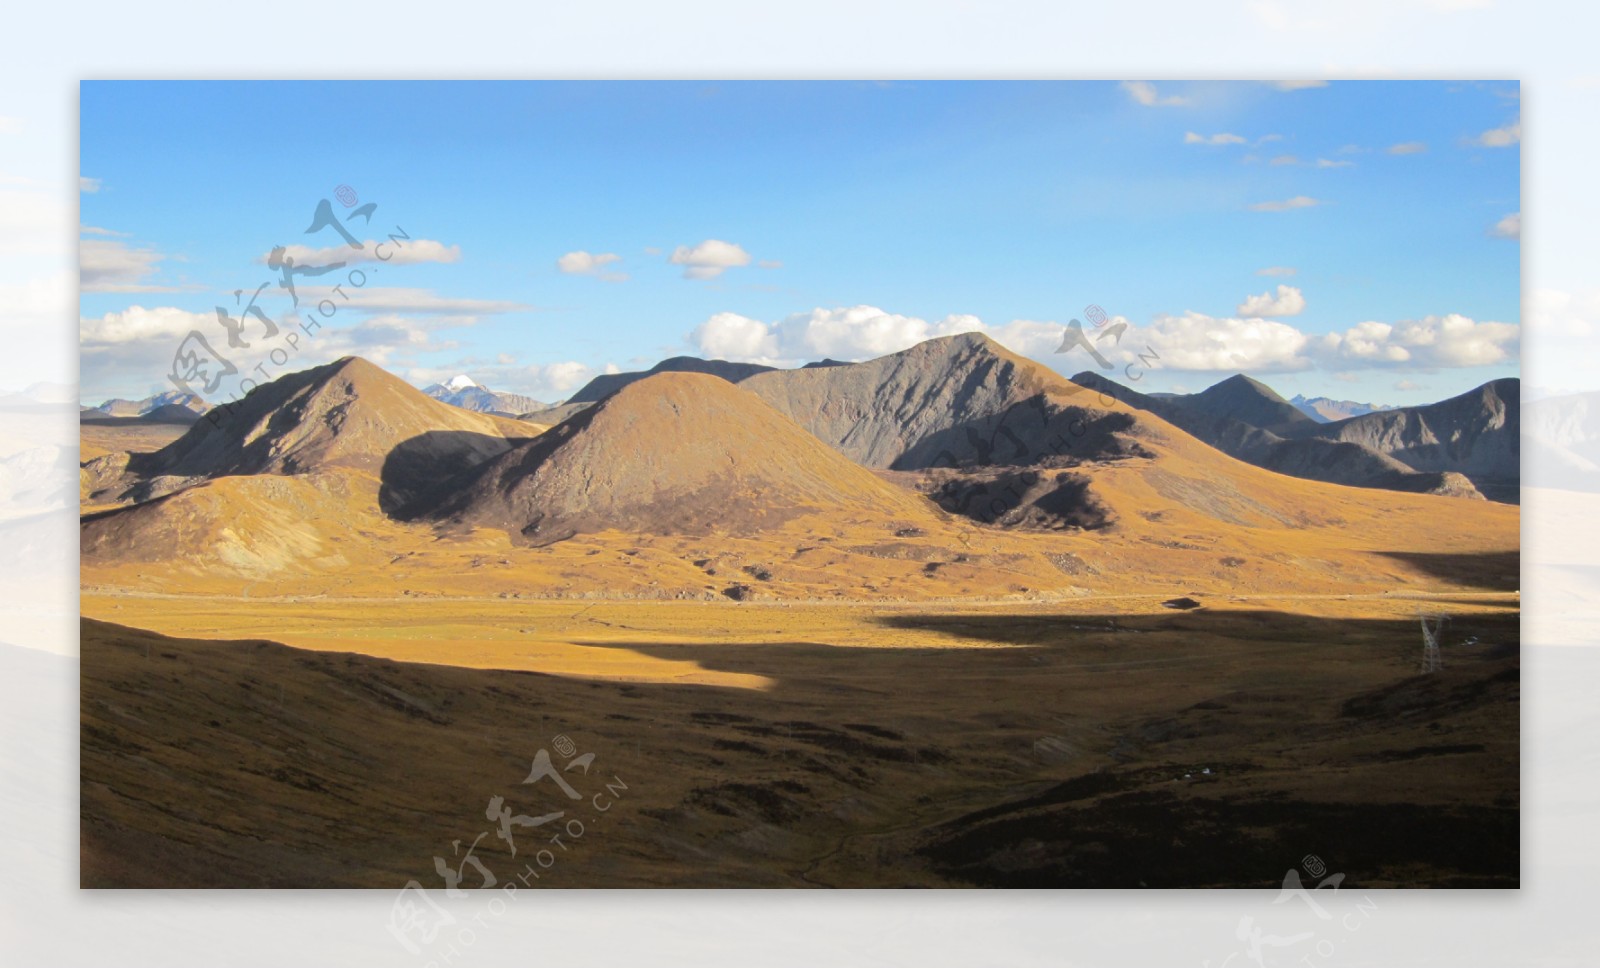 西藏高原上米拉山口风景图片